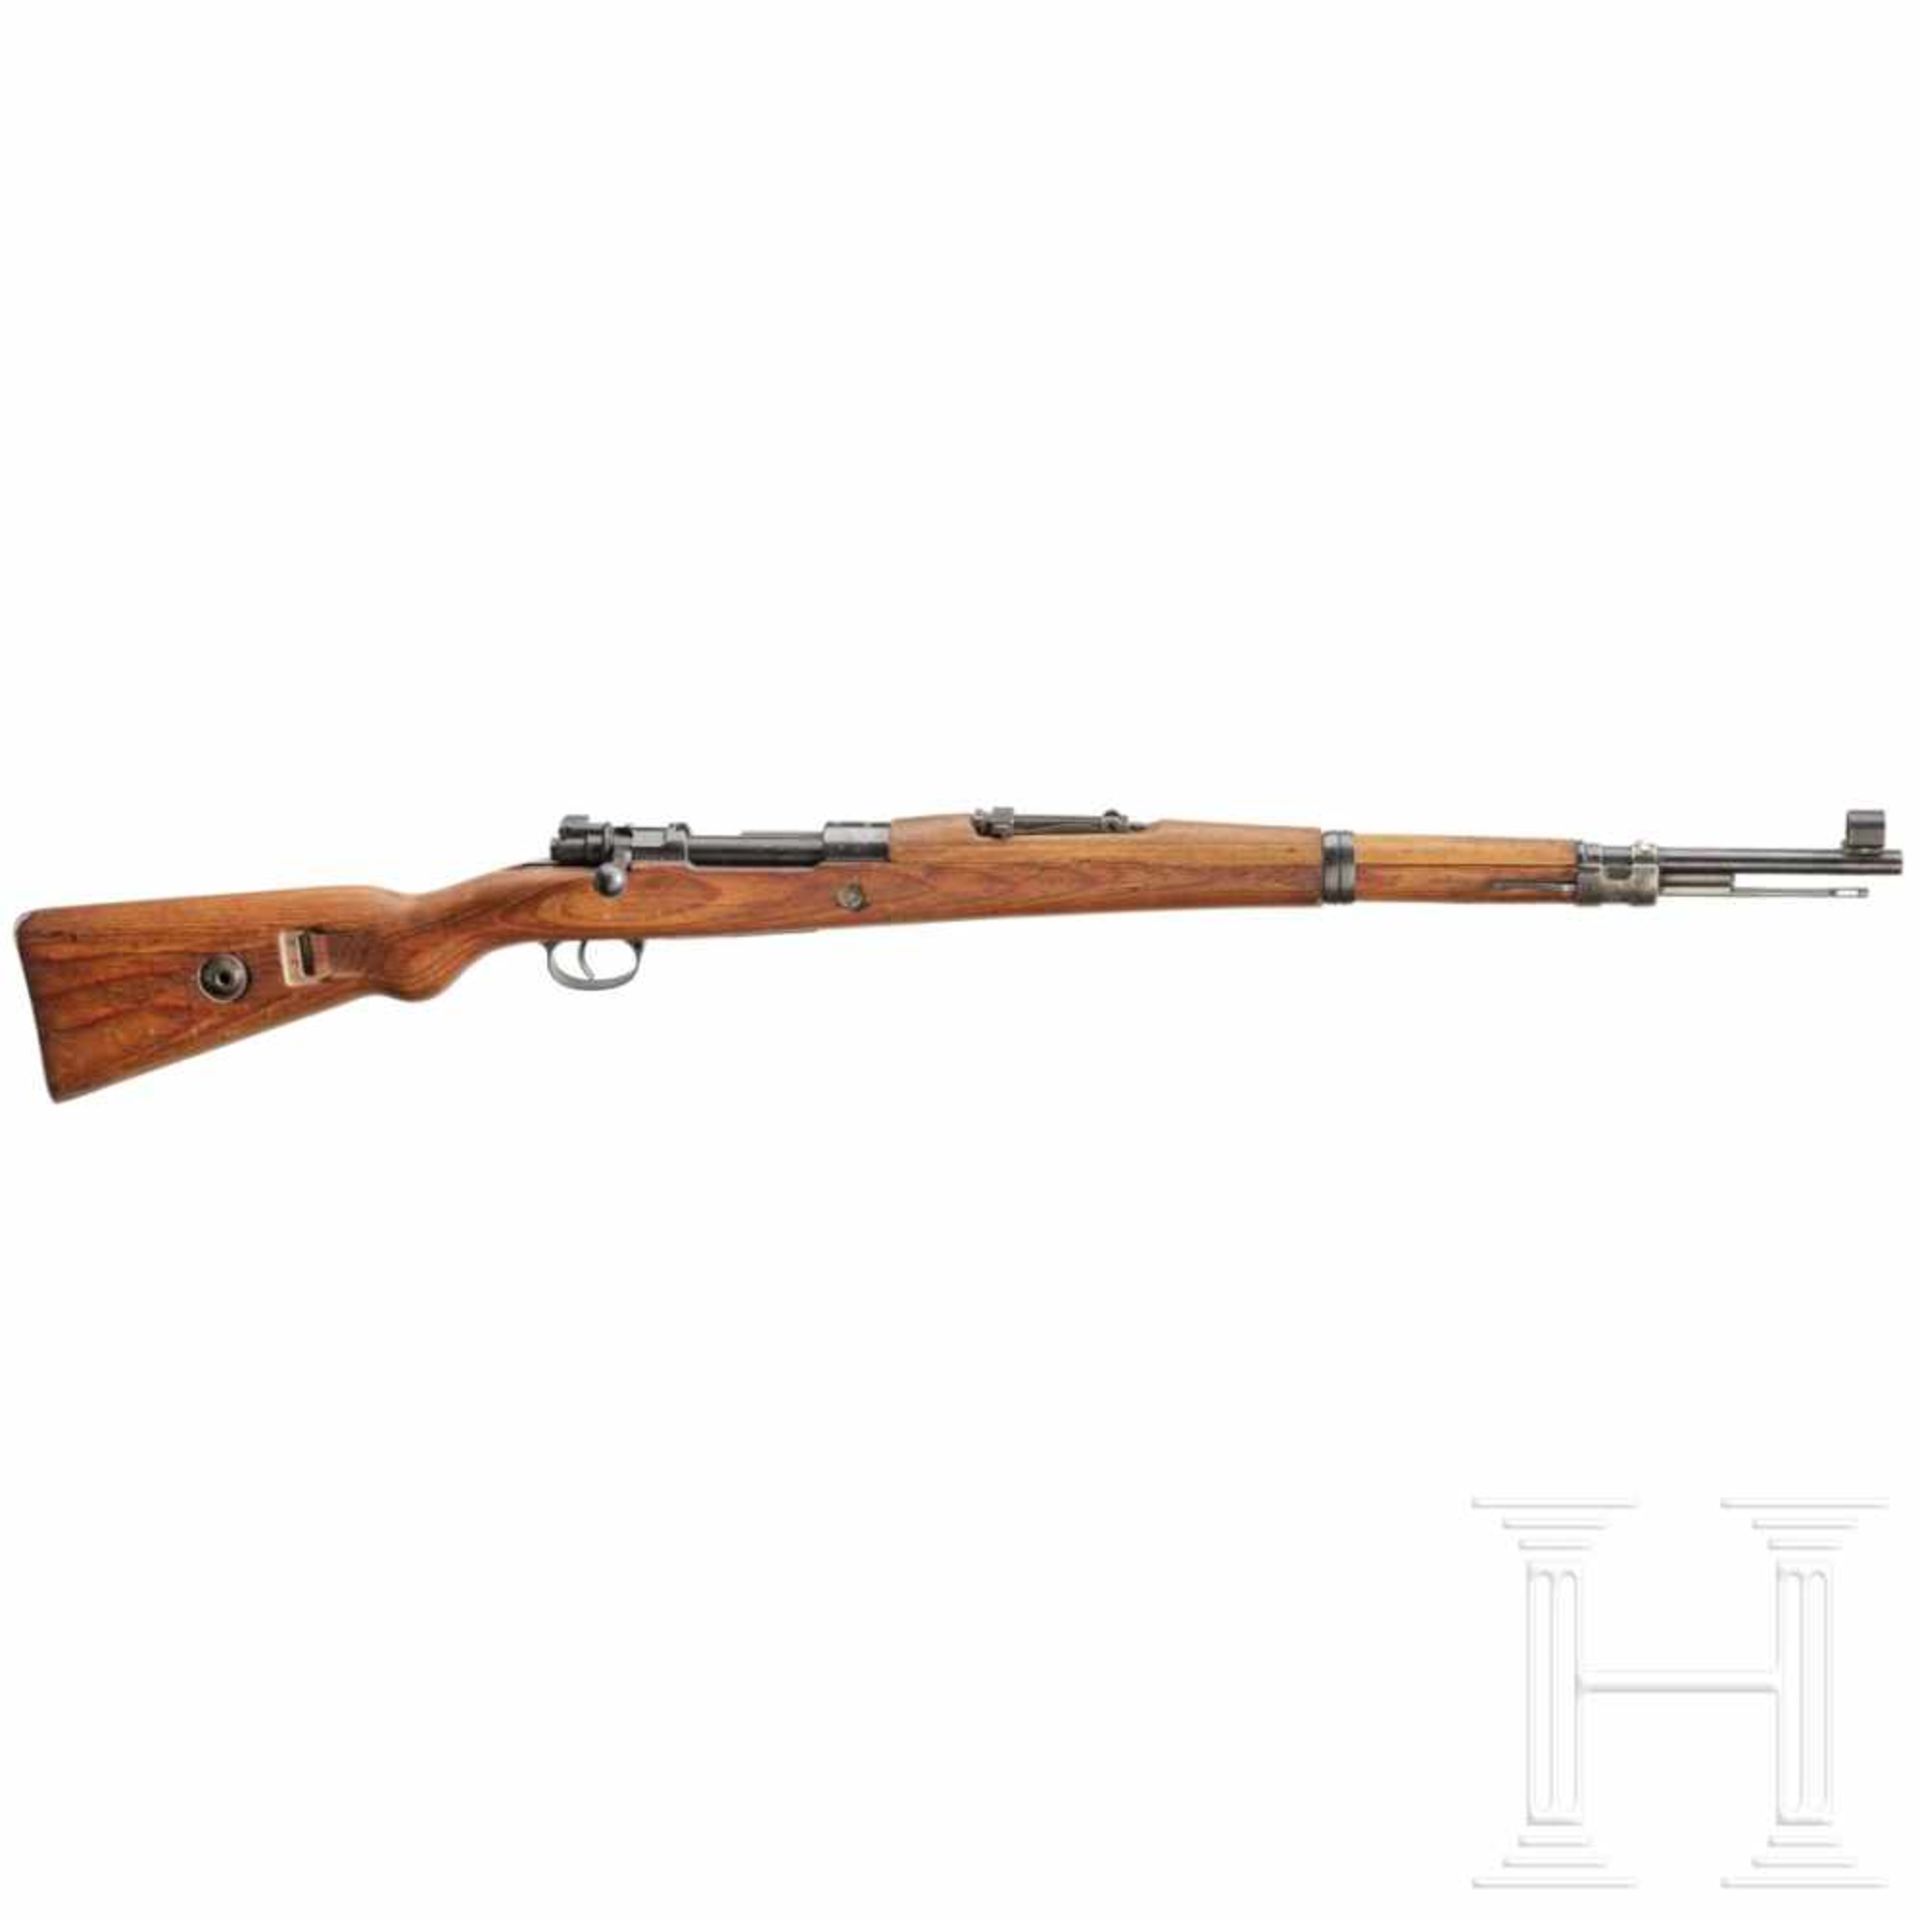 A rifle "G 24(t), code "dou - 41"Kal. 8x57 IS, Nr. 6486a, Verschluss nicht nummerngleich, alle